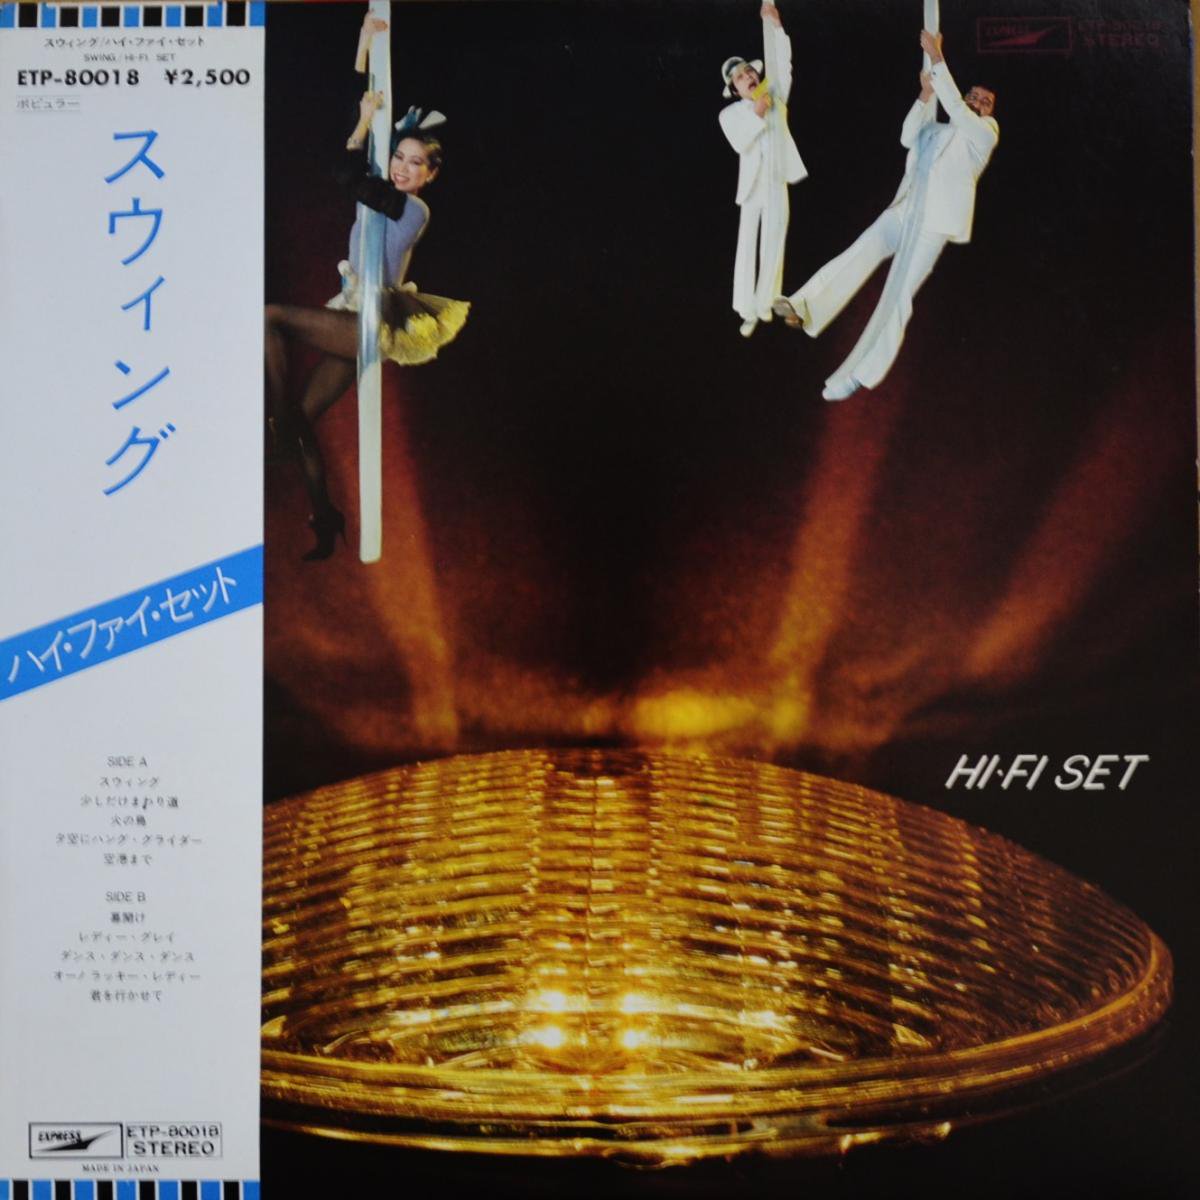 JAPANESE GROOVE / 和モノ - CITY POP,LIGHT MELLOW / シティ ポップ,ライトメロウ - HIP TANK  RECORDS